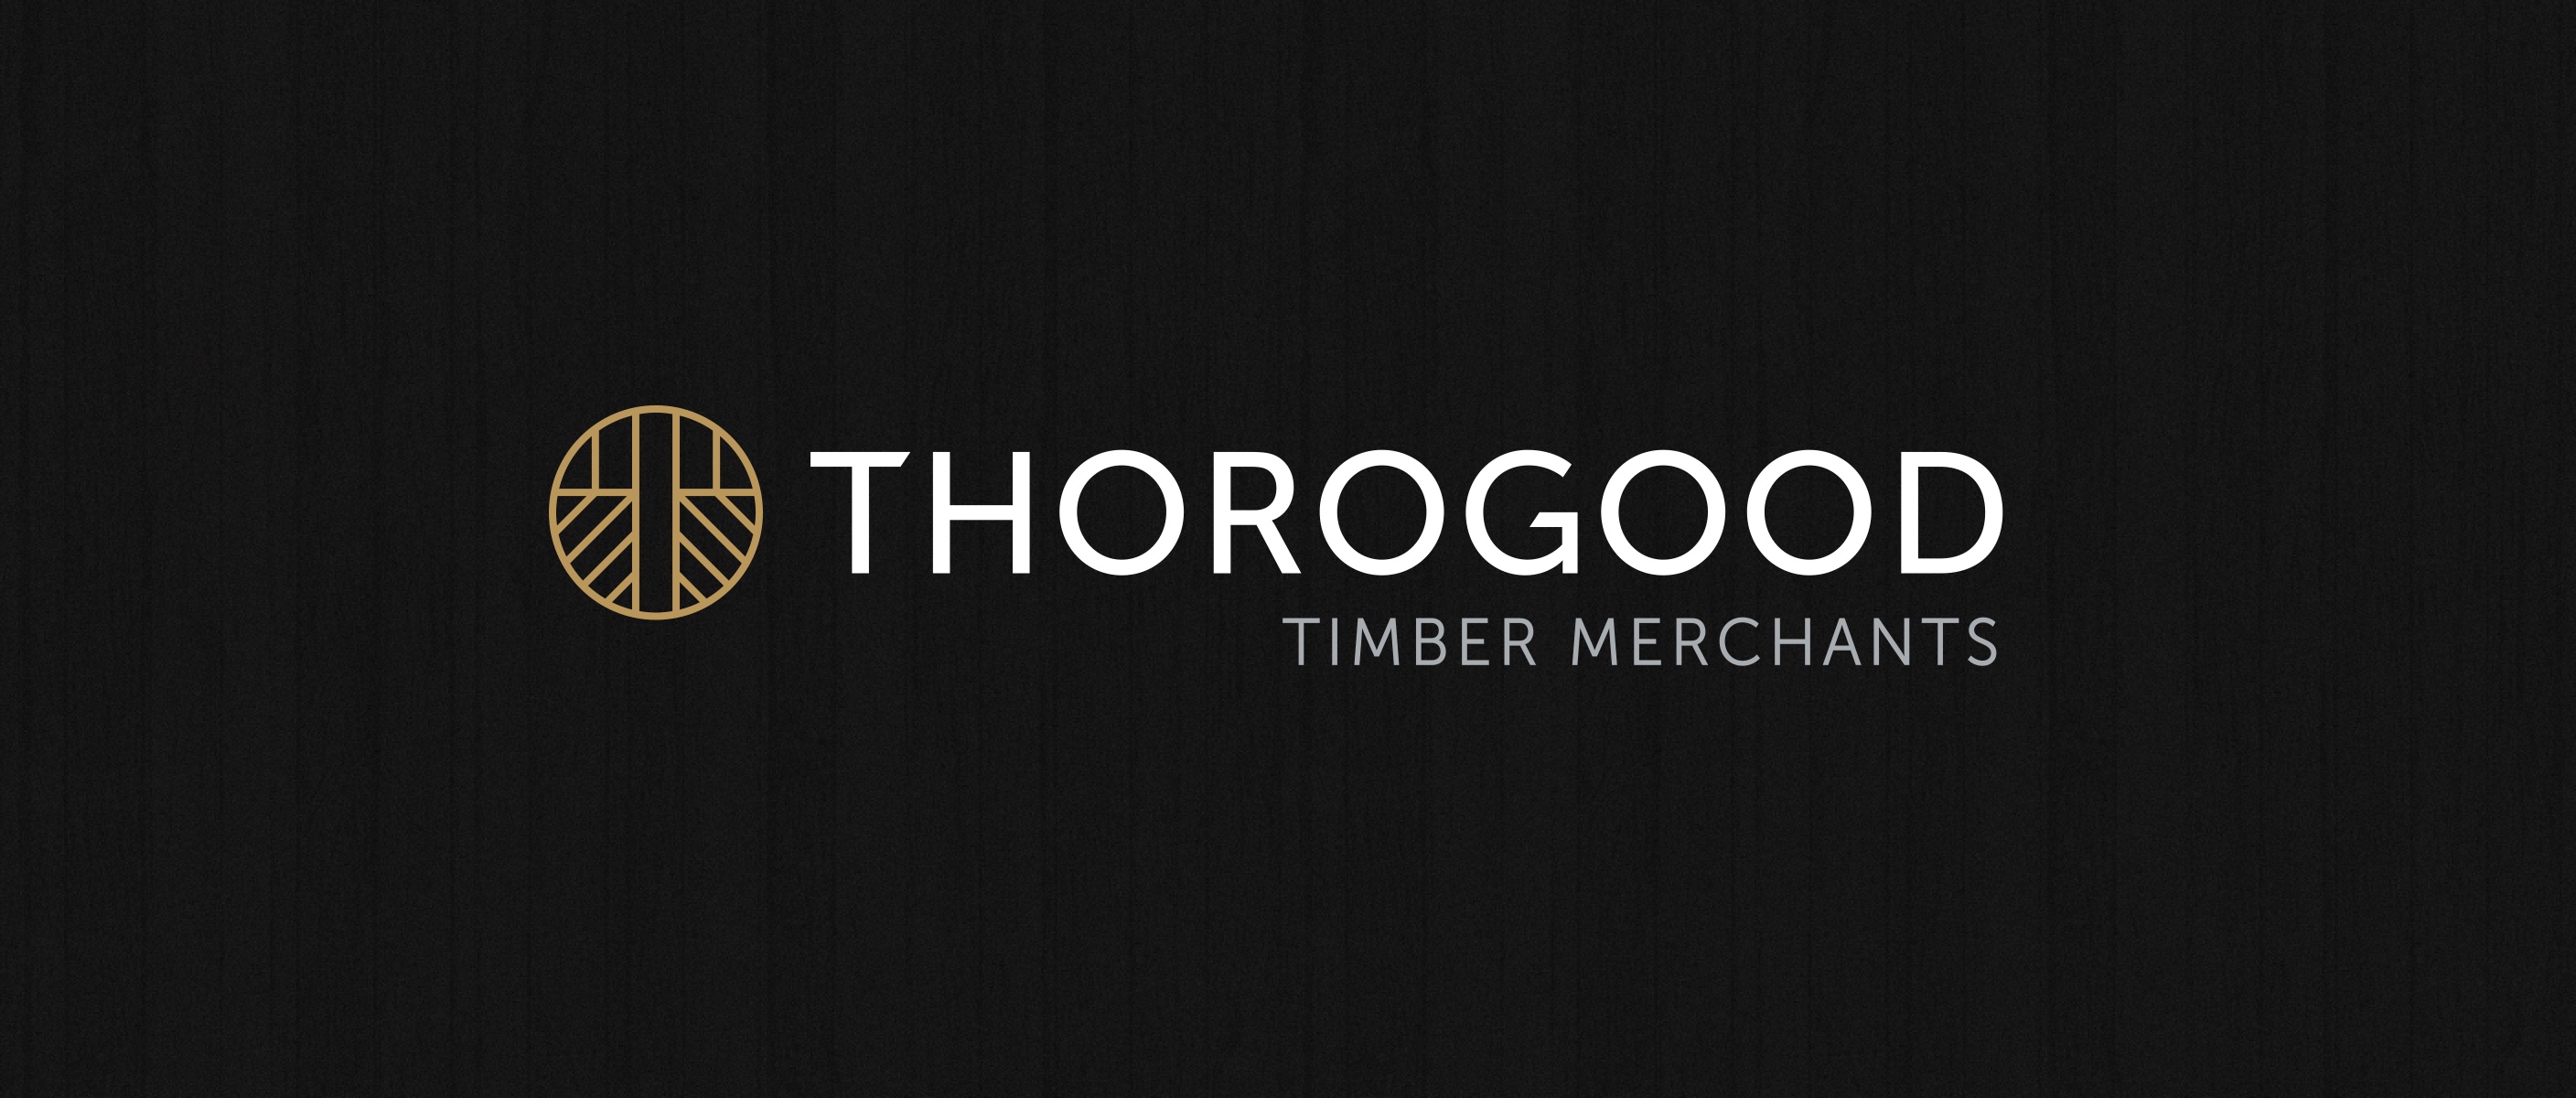 (c) Thorogood.co.uk